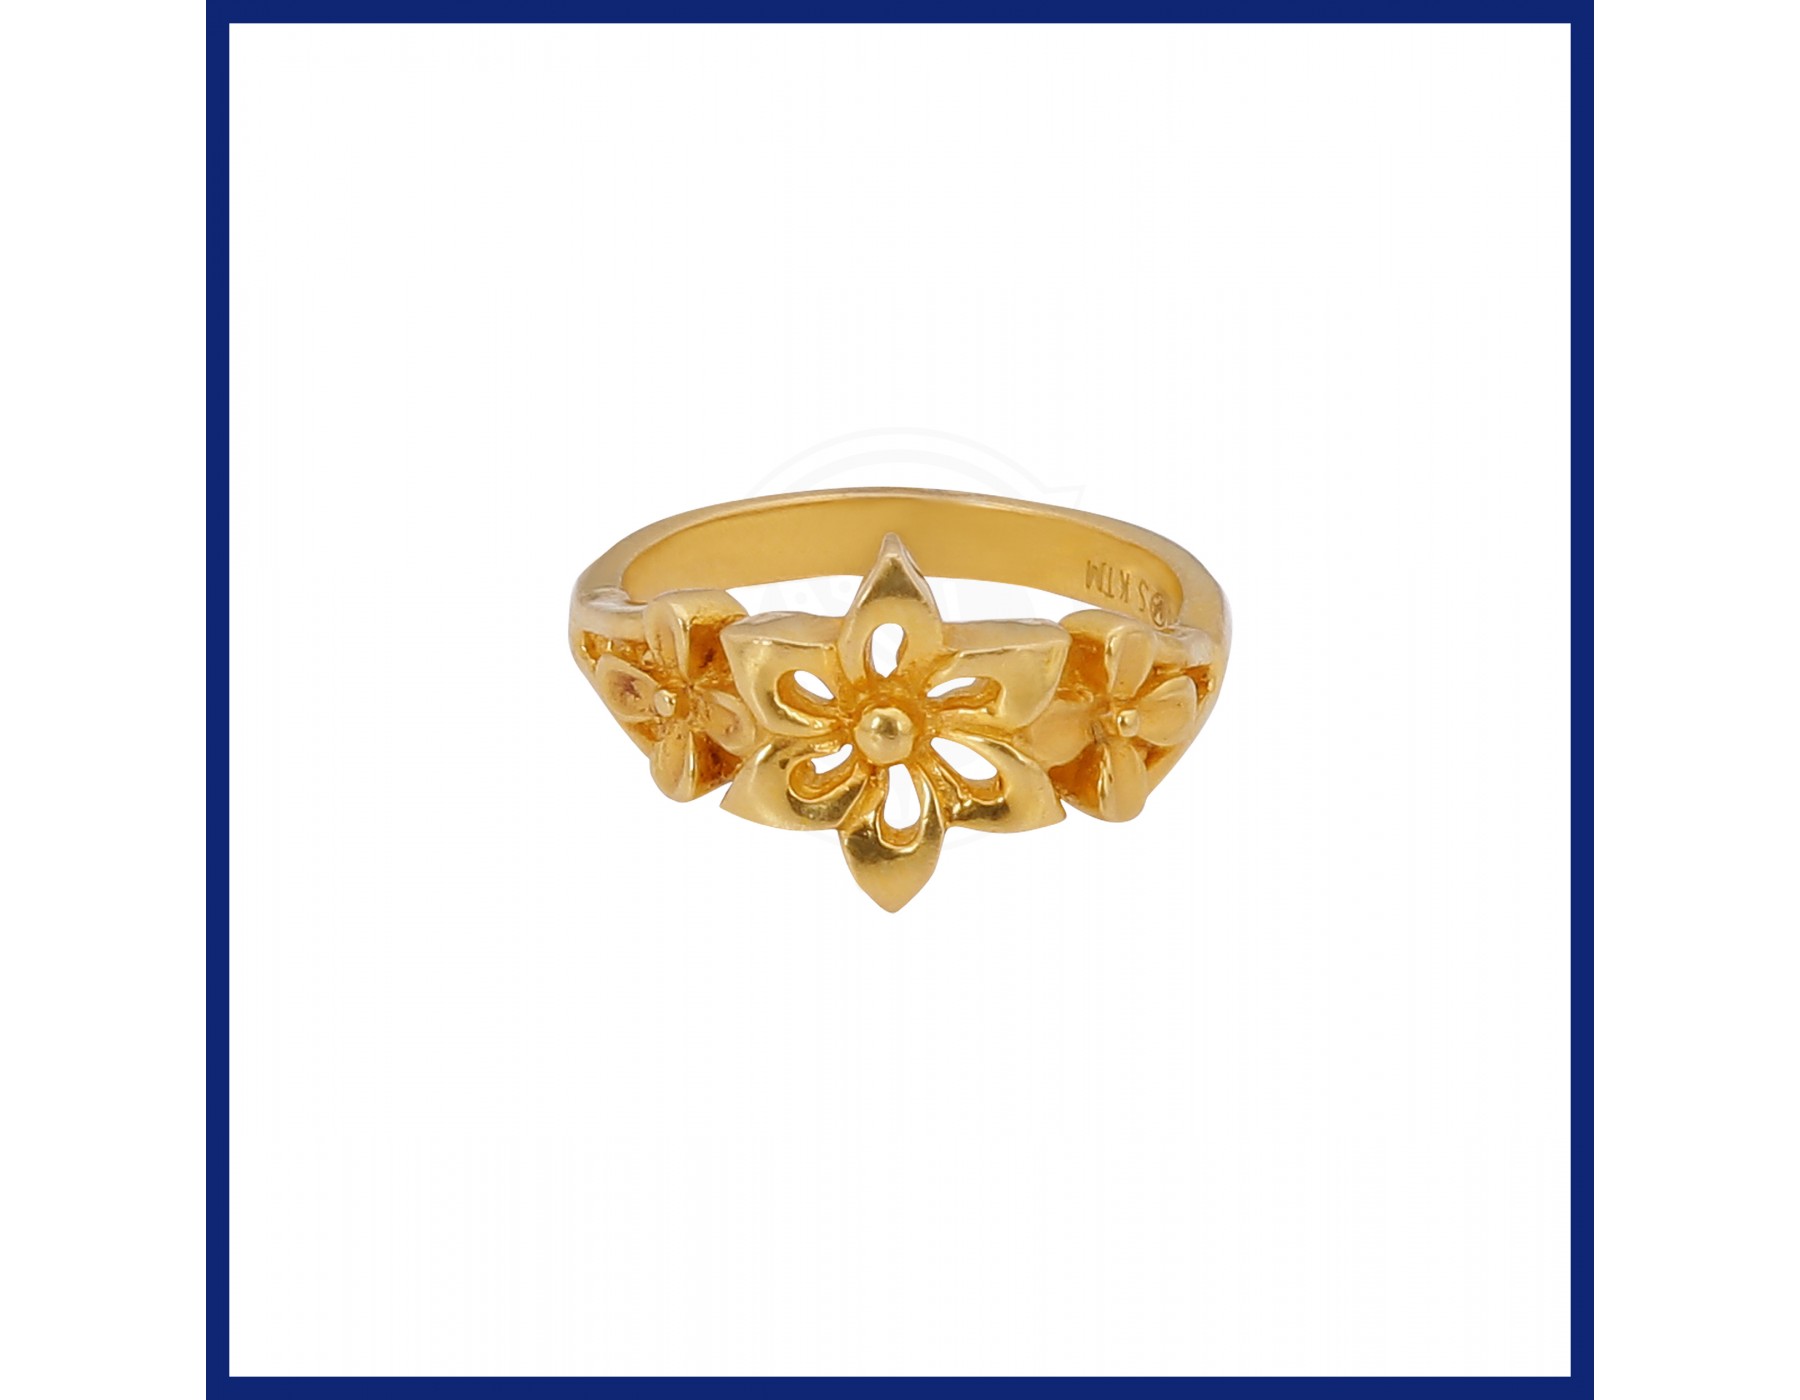 Splendid Gold Diamond Rings Collection for Men | PC Chandra